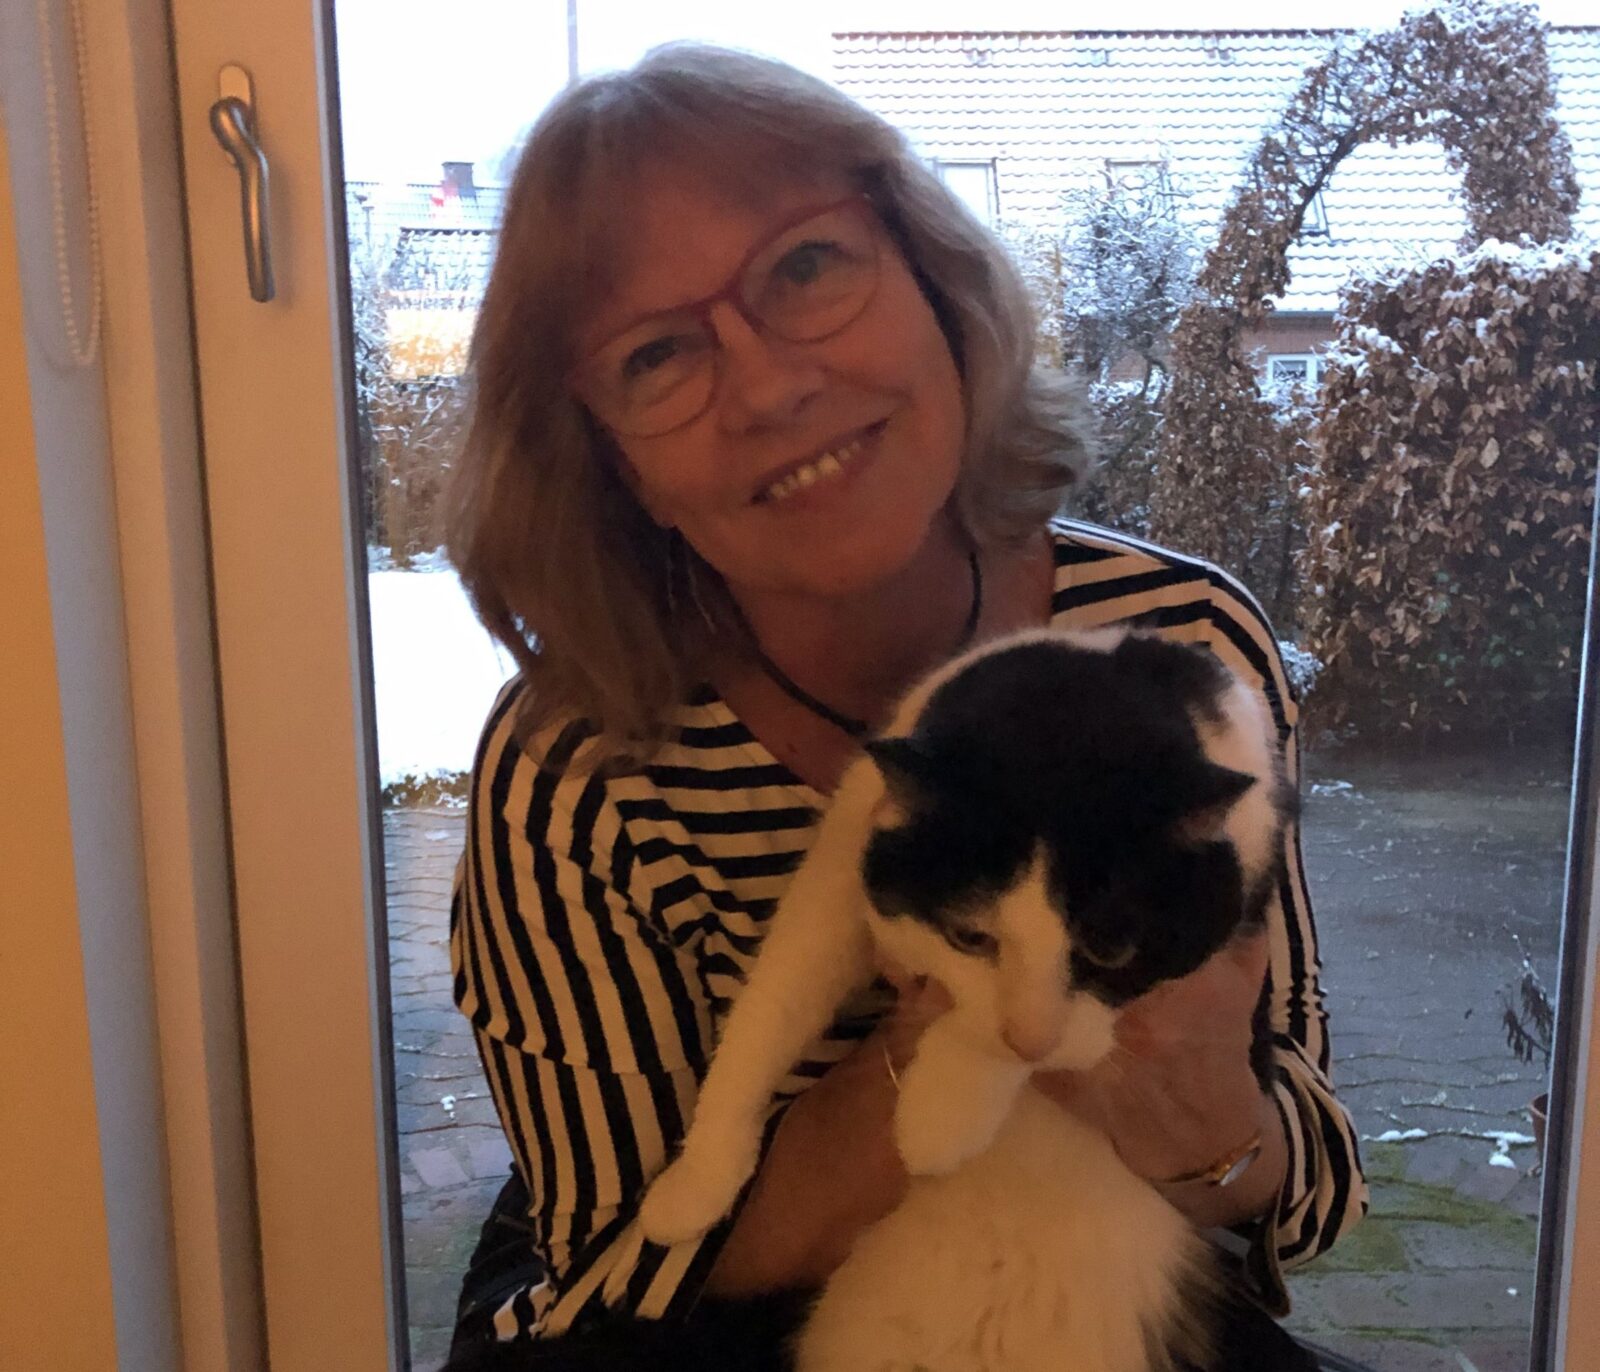 Bettina and her cat Moggi